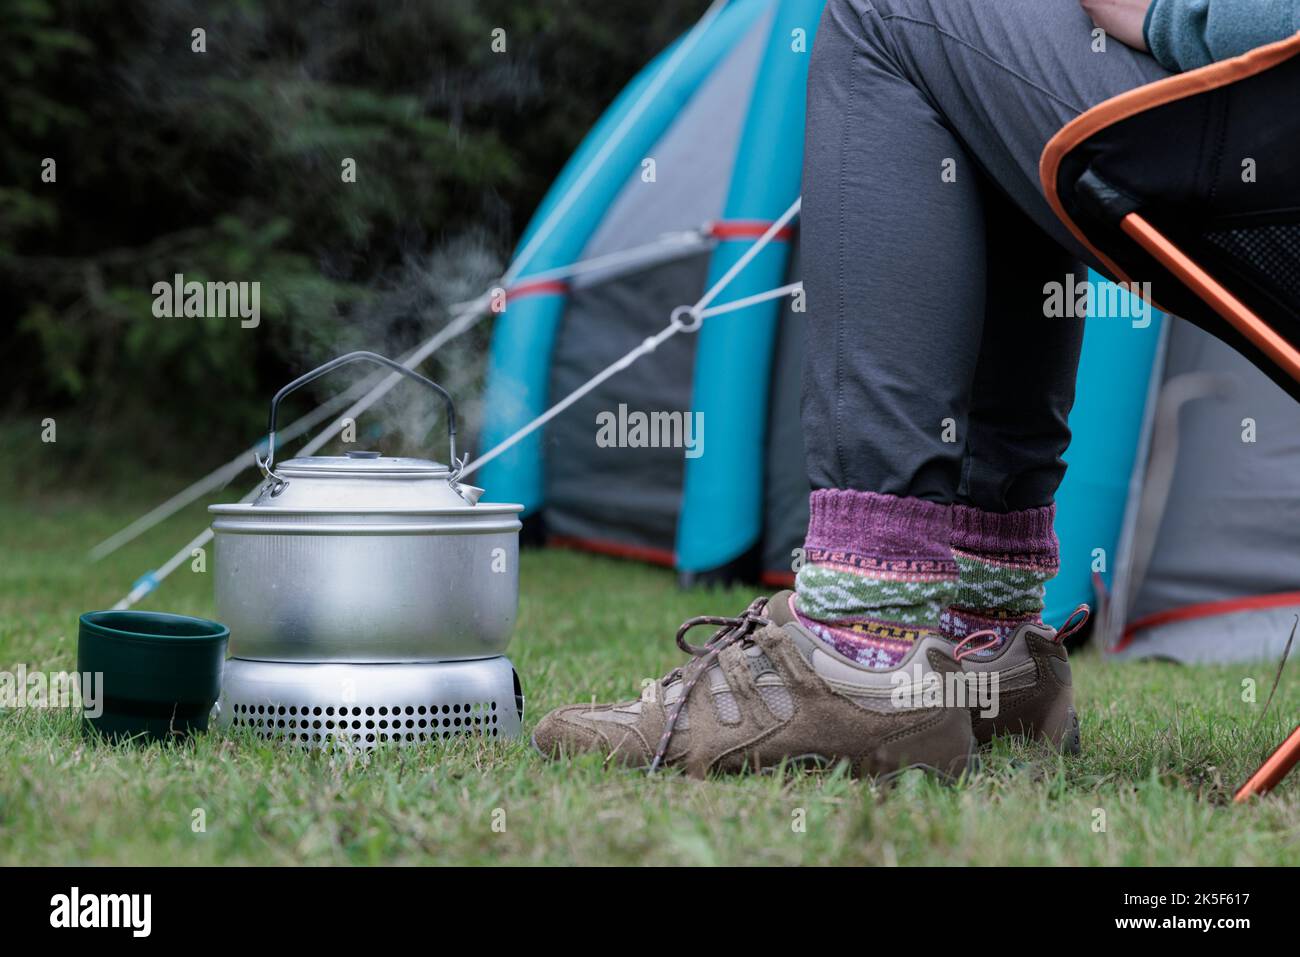 Frau kocht einen Wasserkocher auf einem Campingkocher. Stockfoto